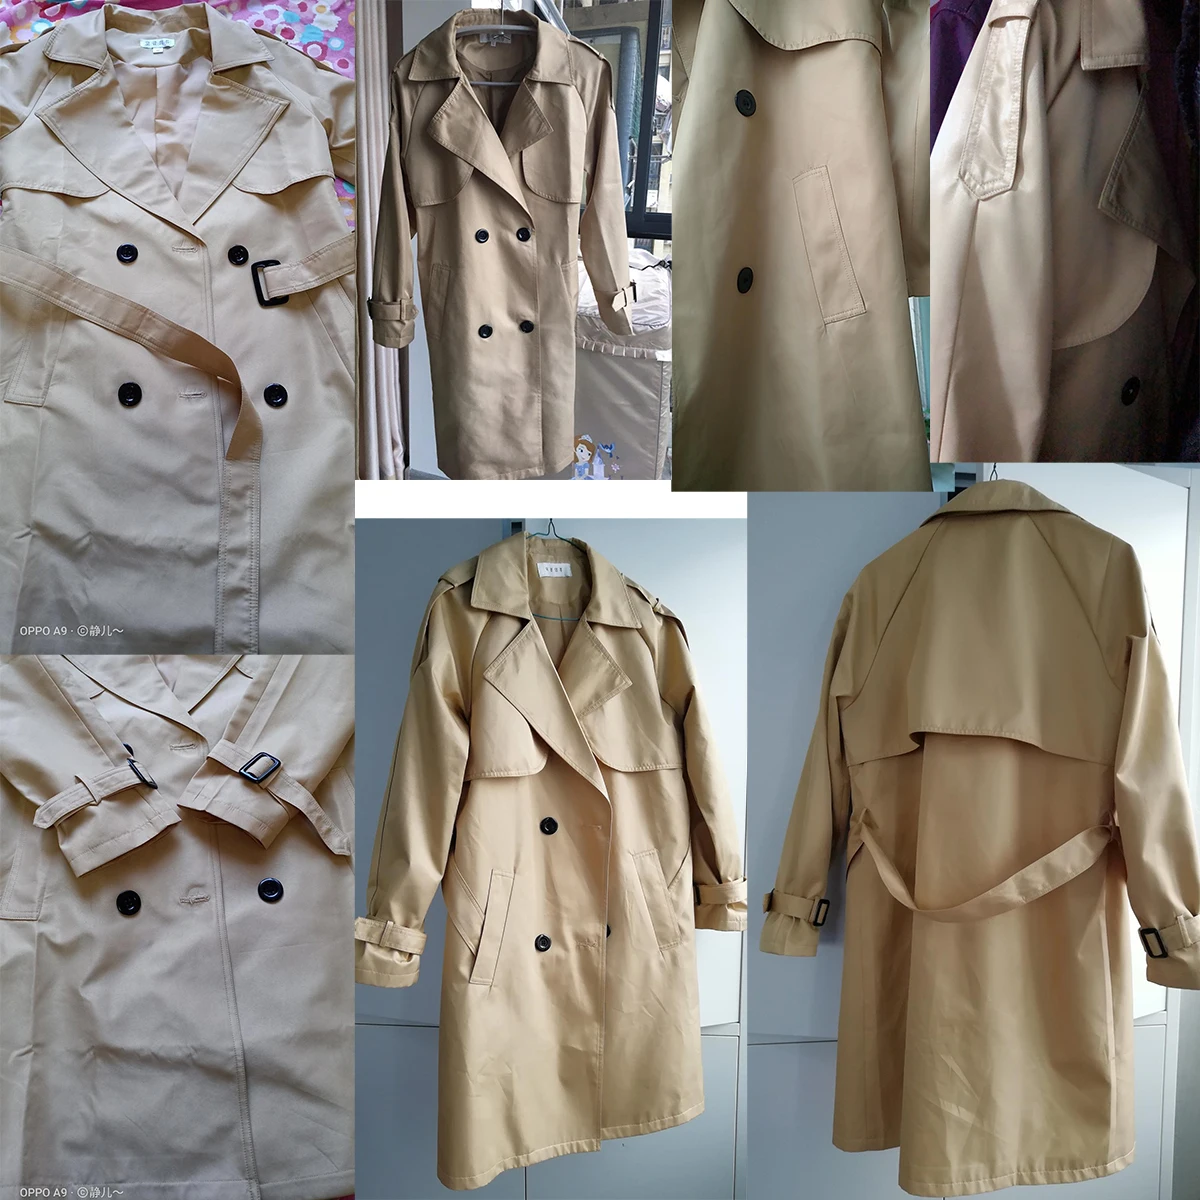 WW11 Vintage Retro fotocopia Tejer patrón bairns-Wear 1258 matiné abrigos